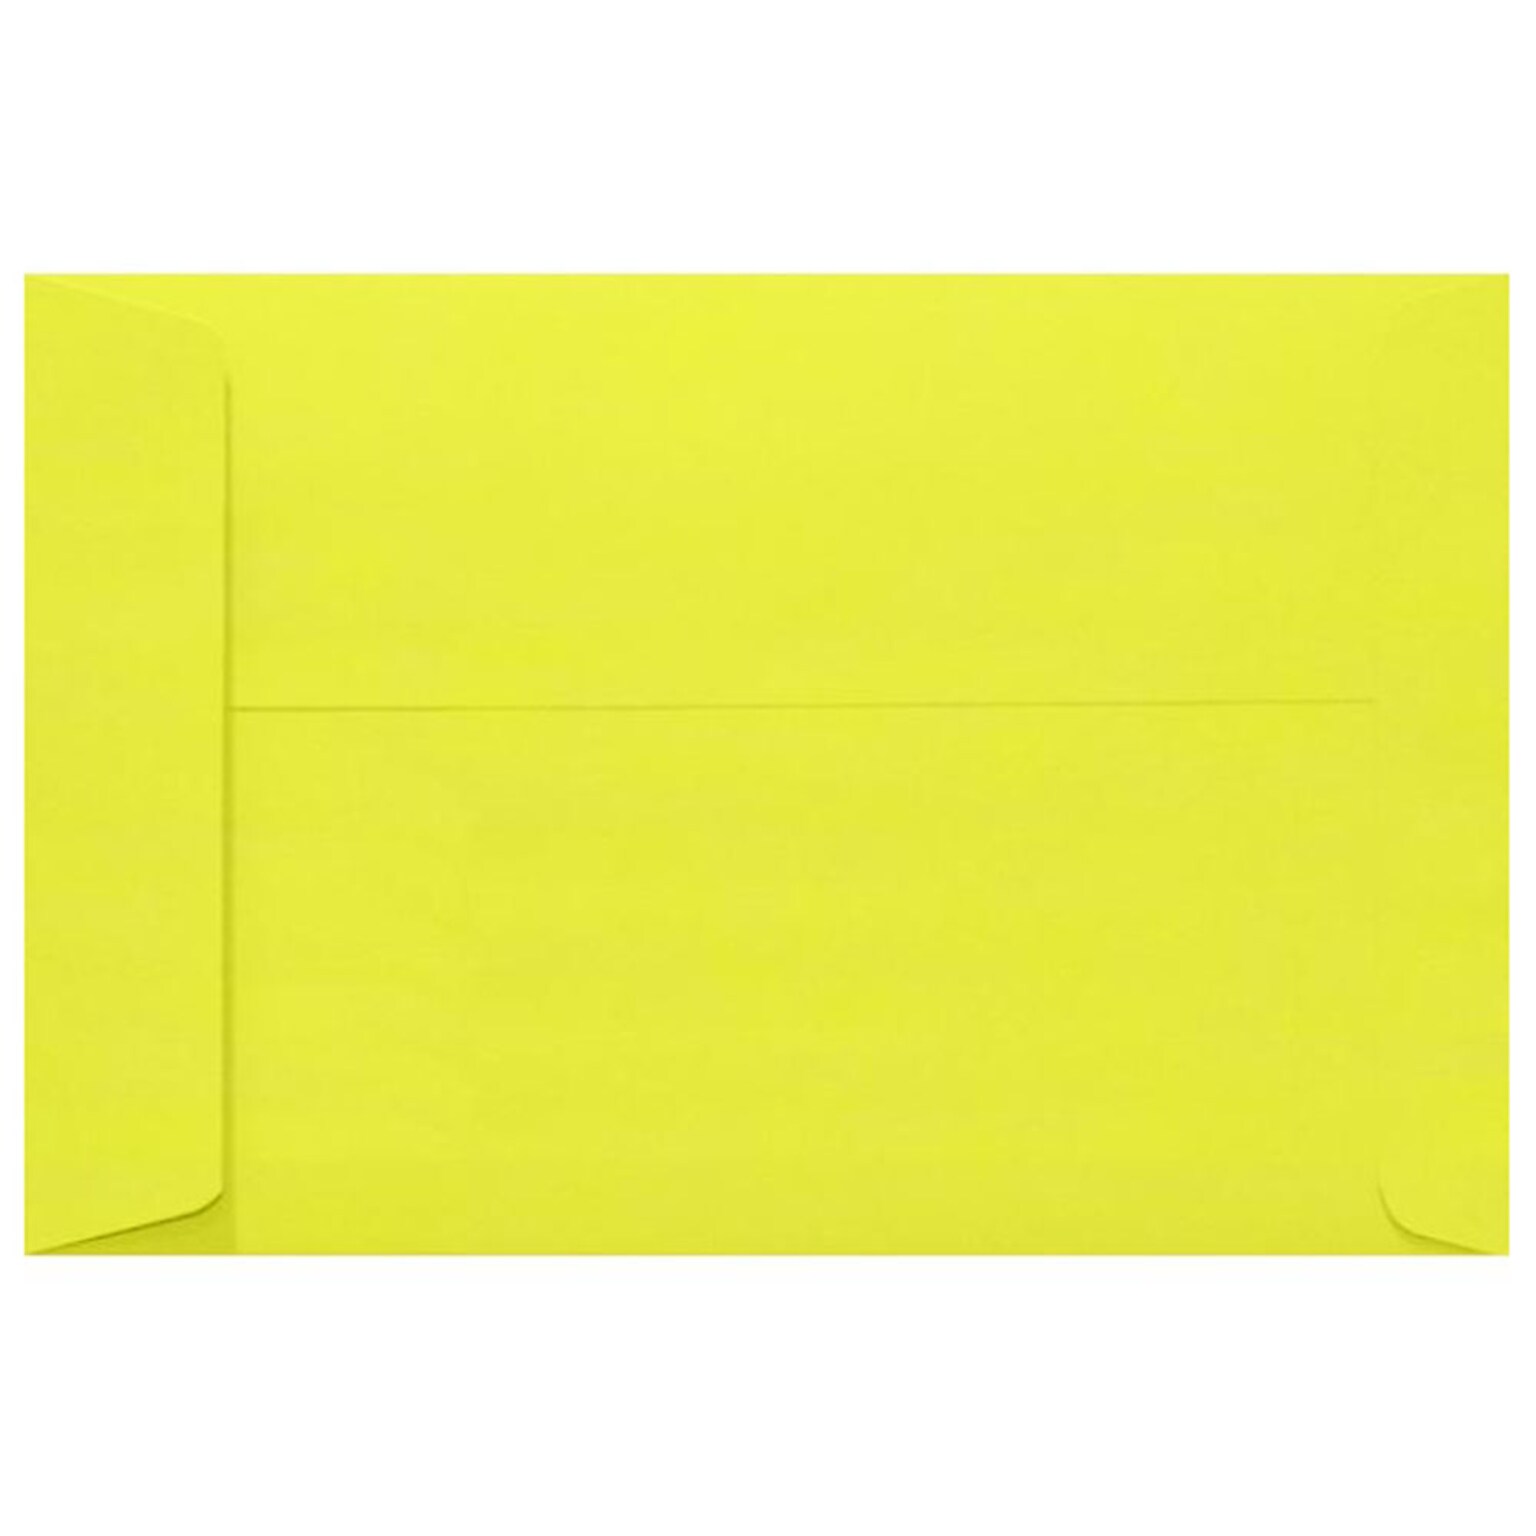 JAM Paper 10 x 13 Open End Envelopes, Citrus Yellow, 500/Pack (4897-L20-500)